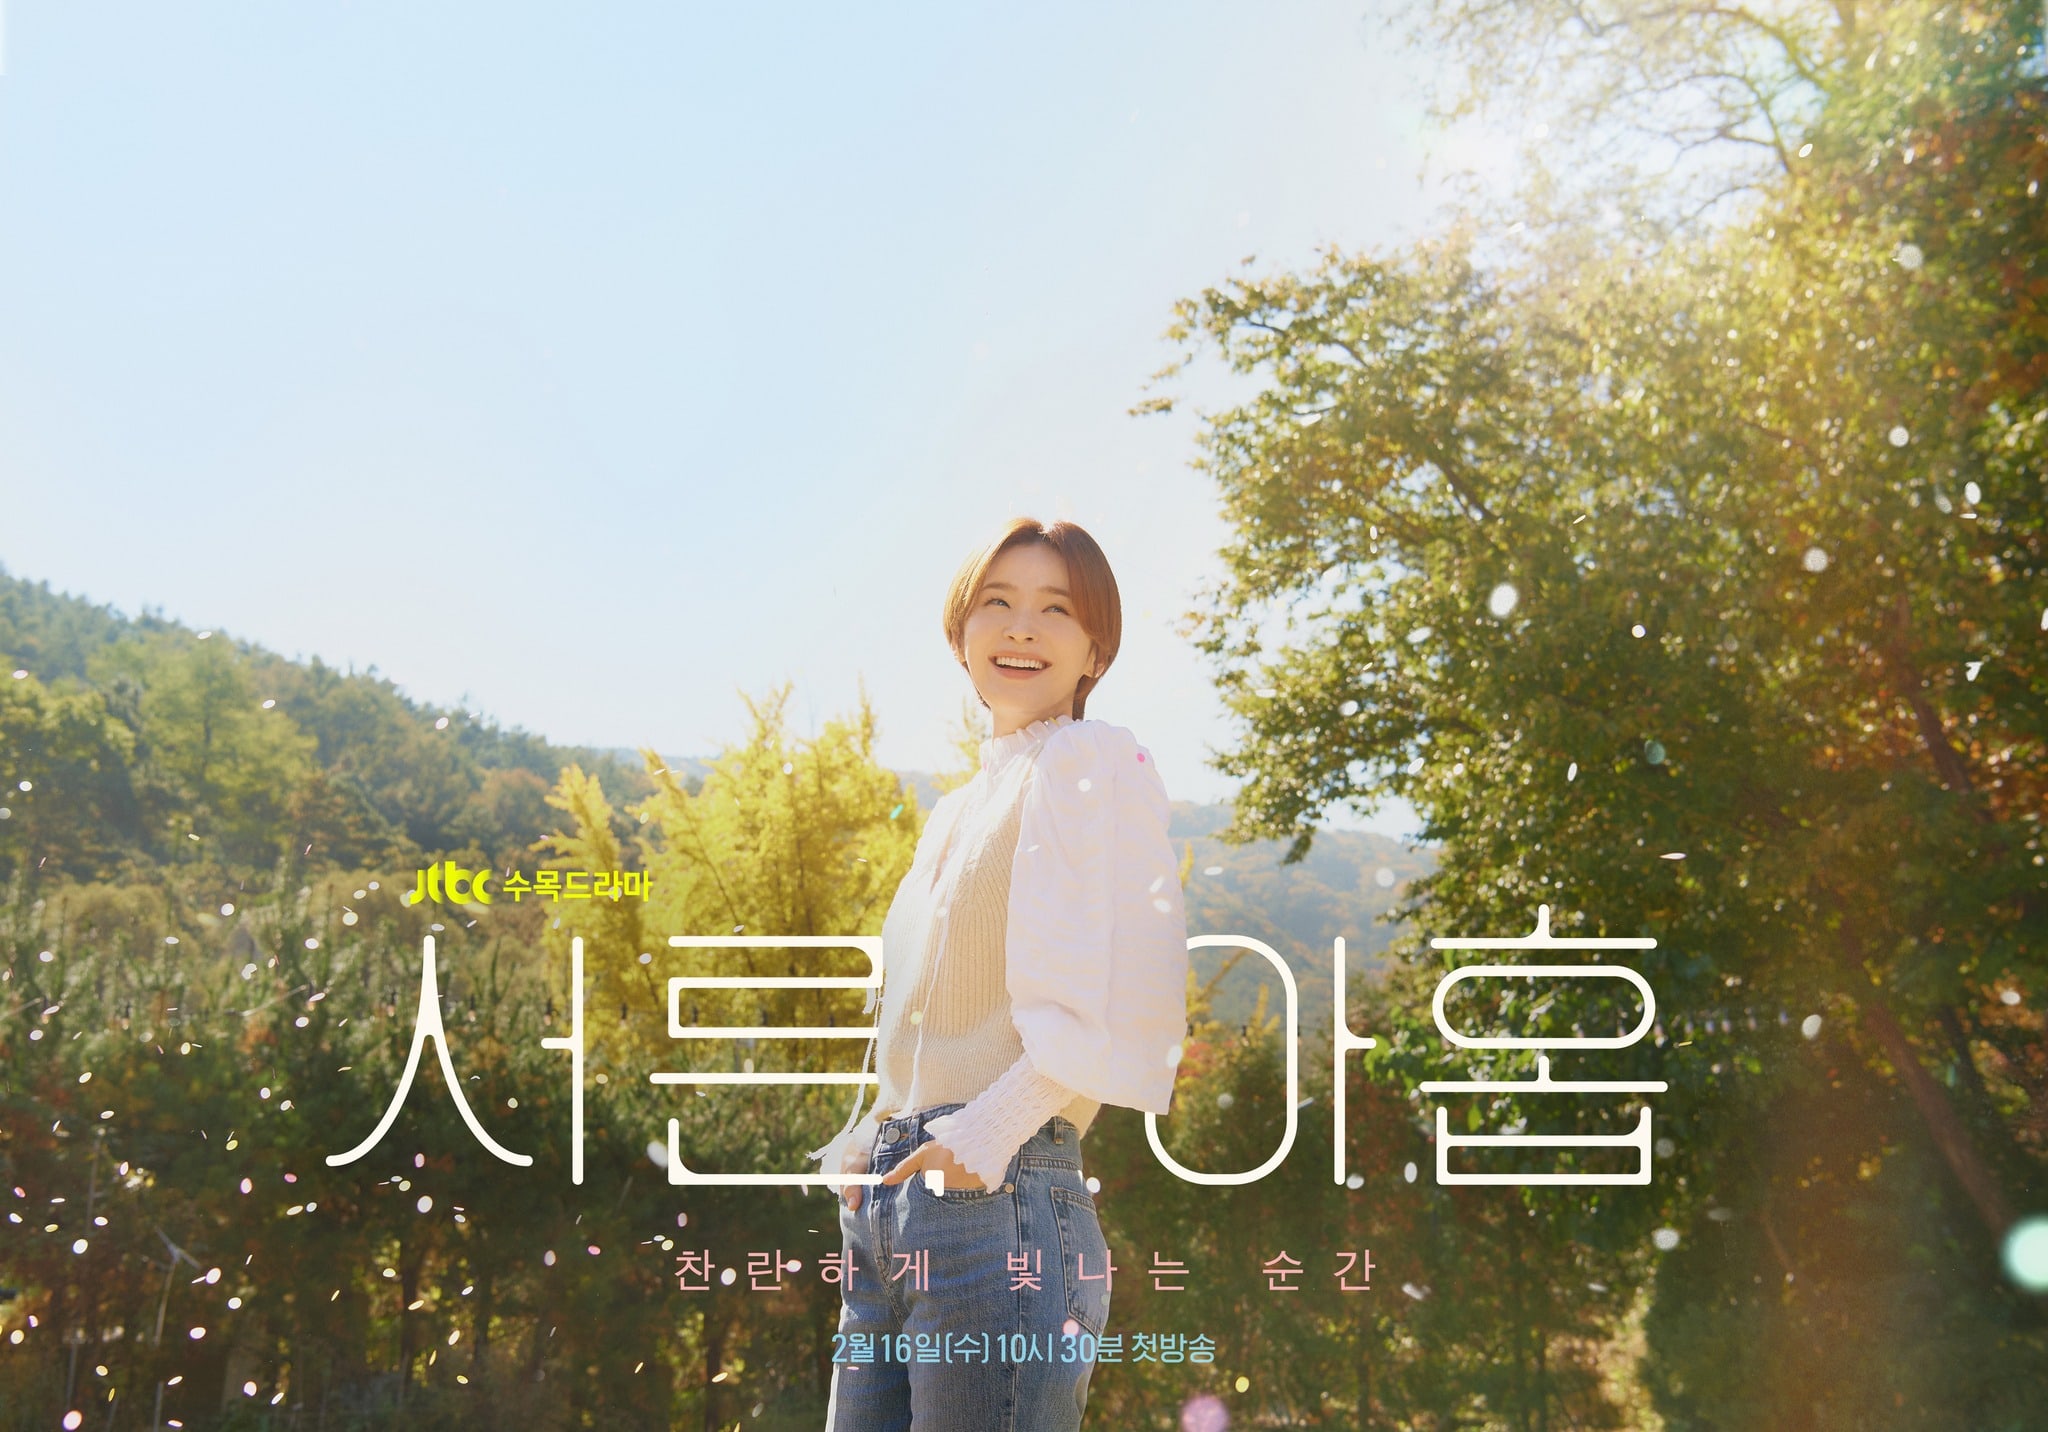 phim 39 Jeon Mi Do vai Jung Chan Young 03 - 39: Phim tâm lý về cuộc đời người phụ nữ trước ngưỡng tuổi 40